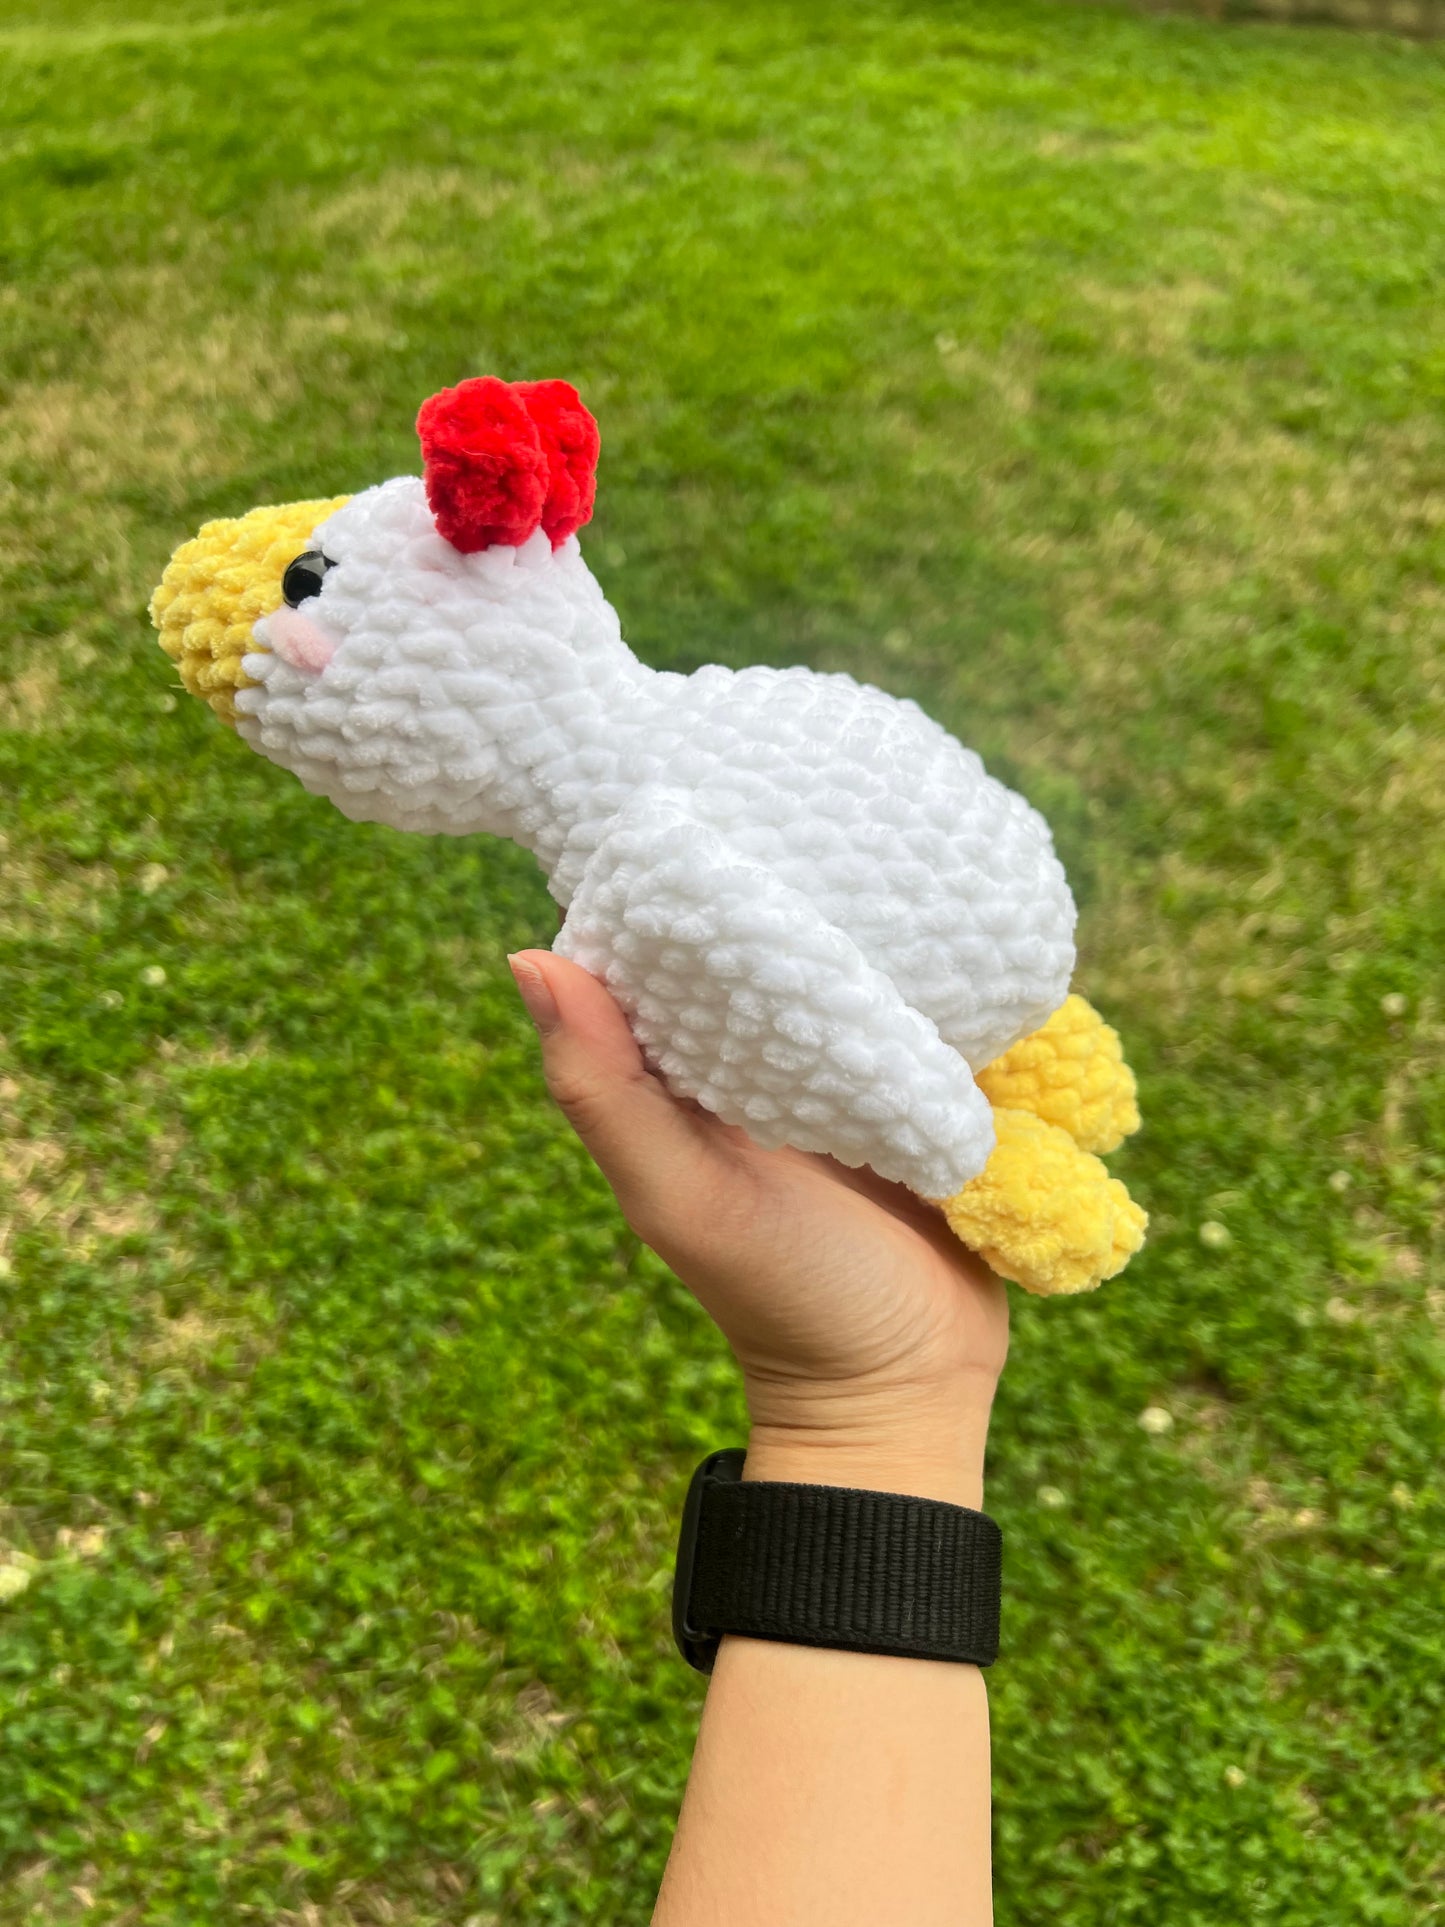 No Sew 4-in-1 Crochet Bird Pattern Bundle